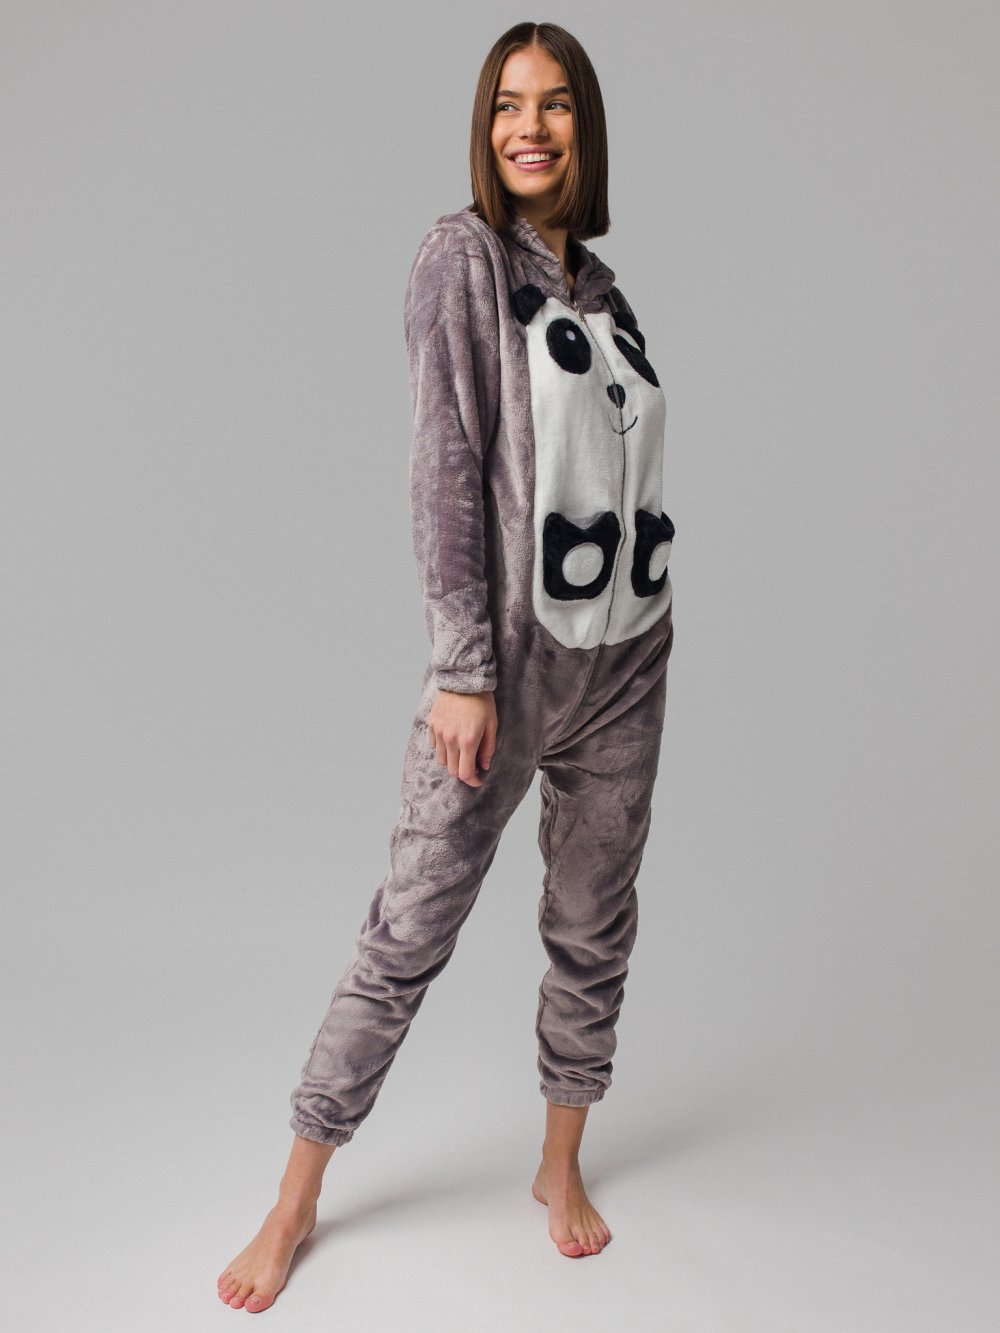 Sivé pyžamo Panda